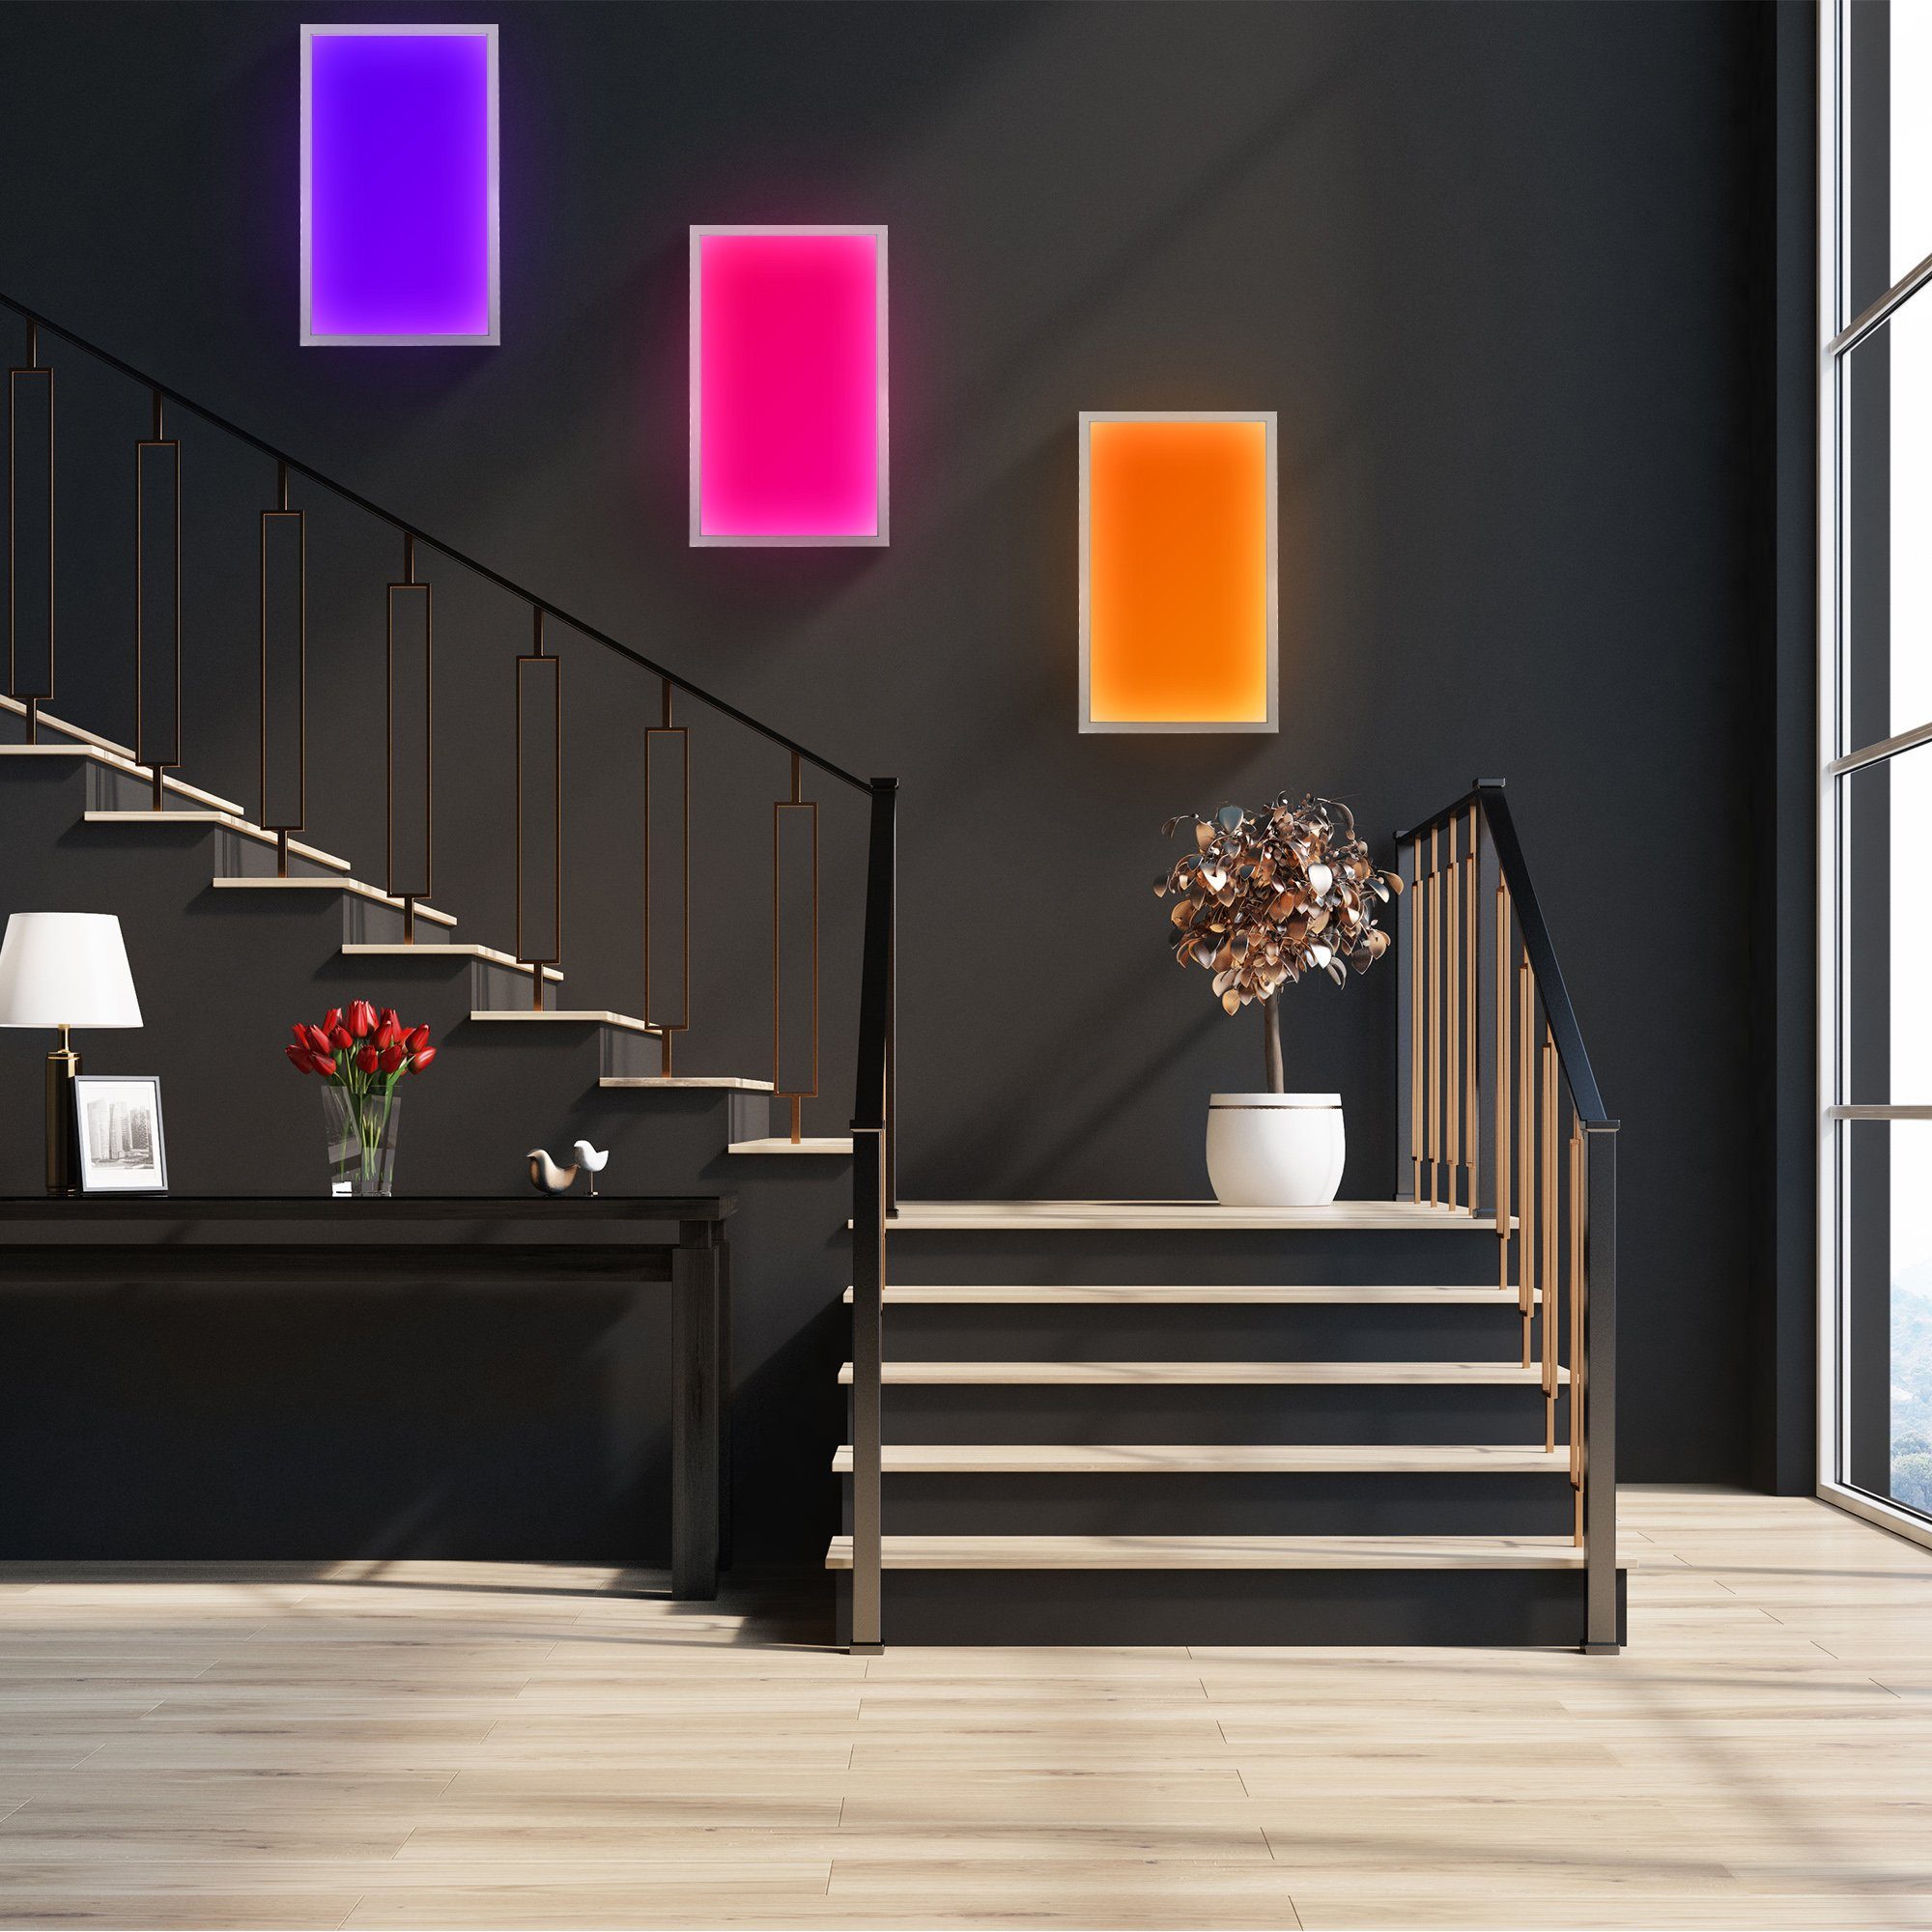 LED dimmbar, Farbtemp. B.K.Licht fest Fernbedienung Deckenleuchte, Panel, integriert, einstellbar, RGB, stufenlos